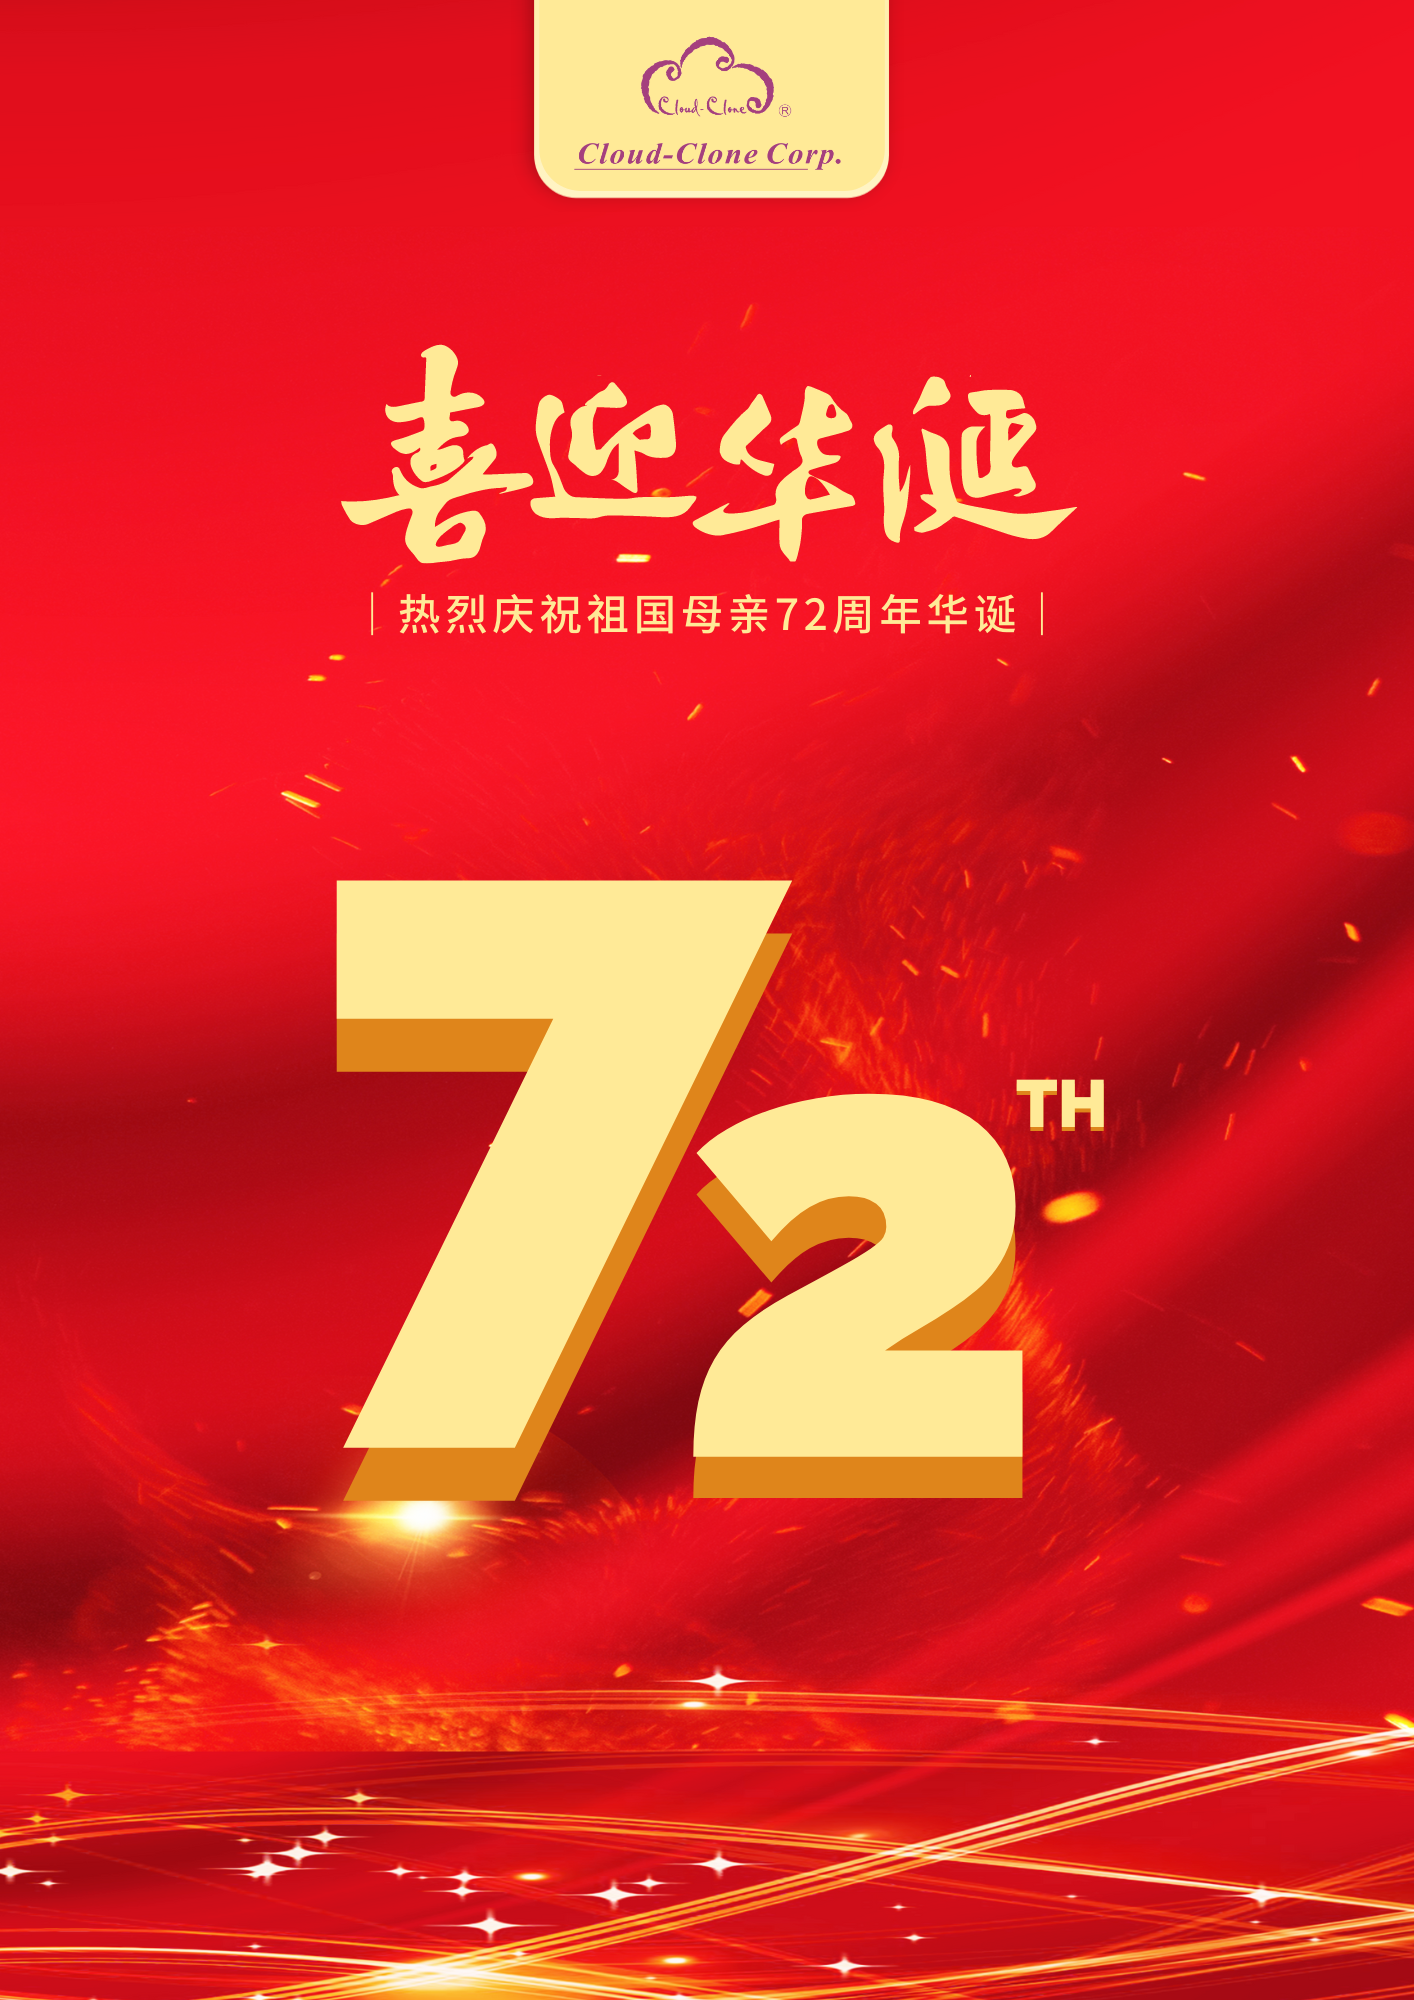 云克隆 的想法: 云克隆热烈庆祝中华人民共和国成立72周年… 